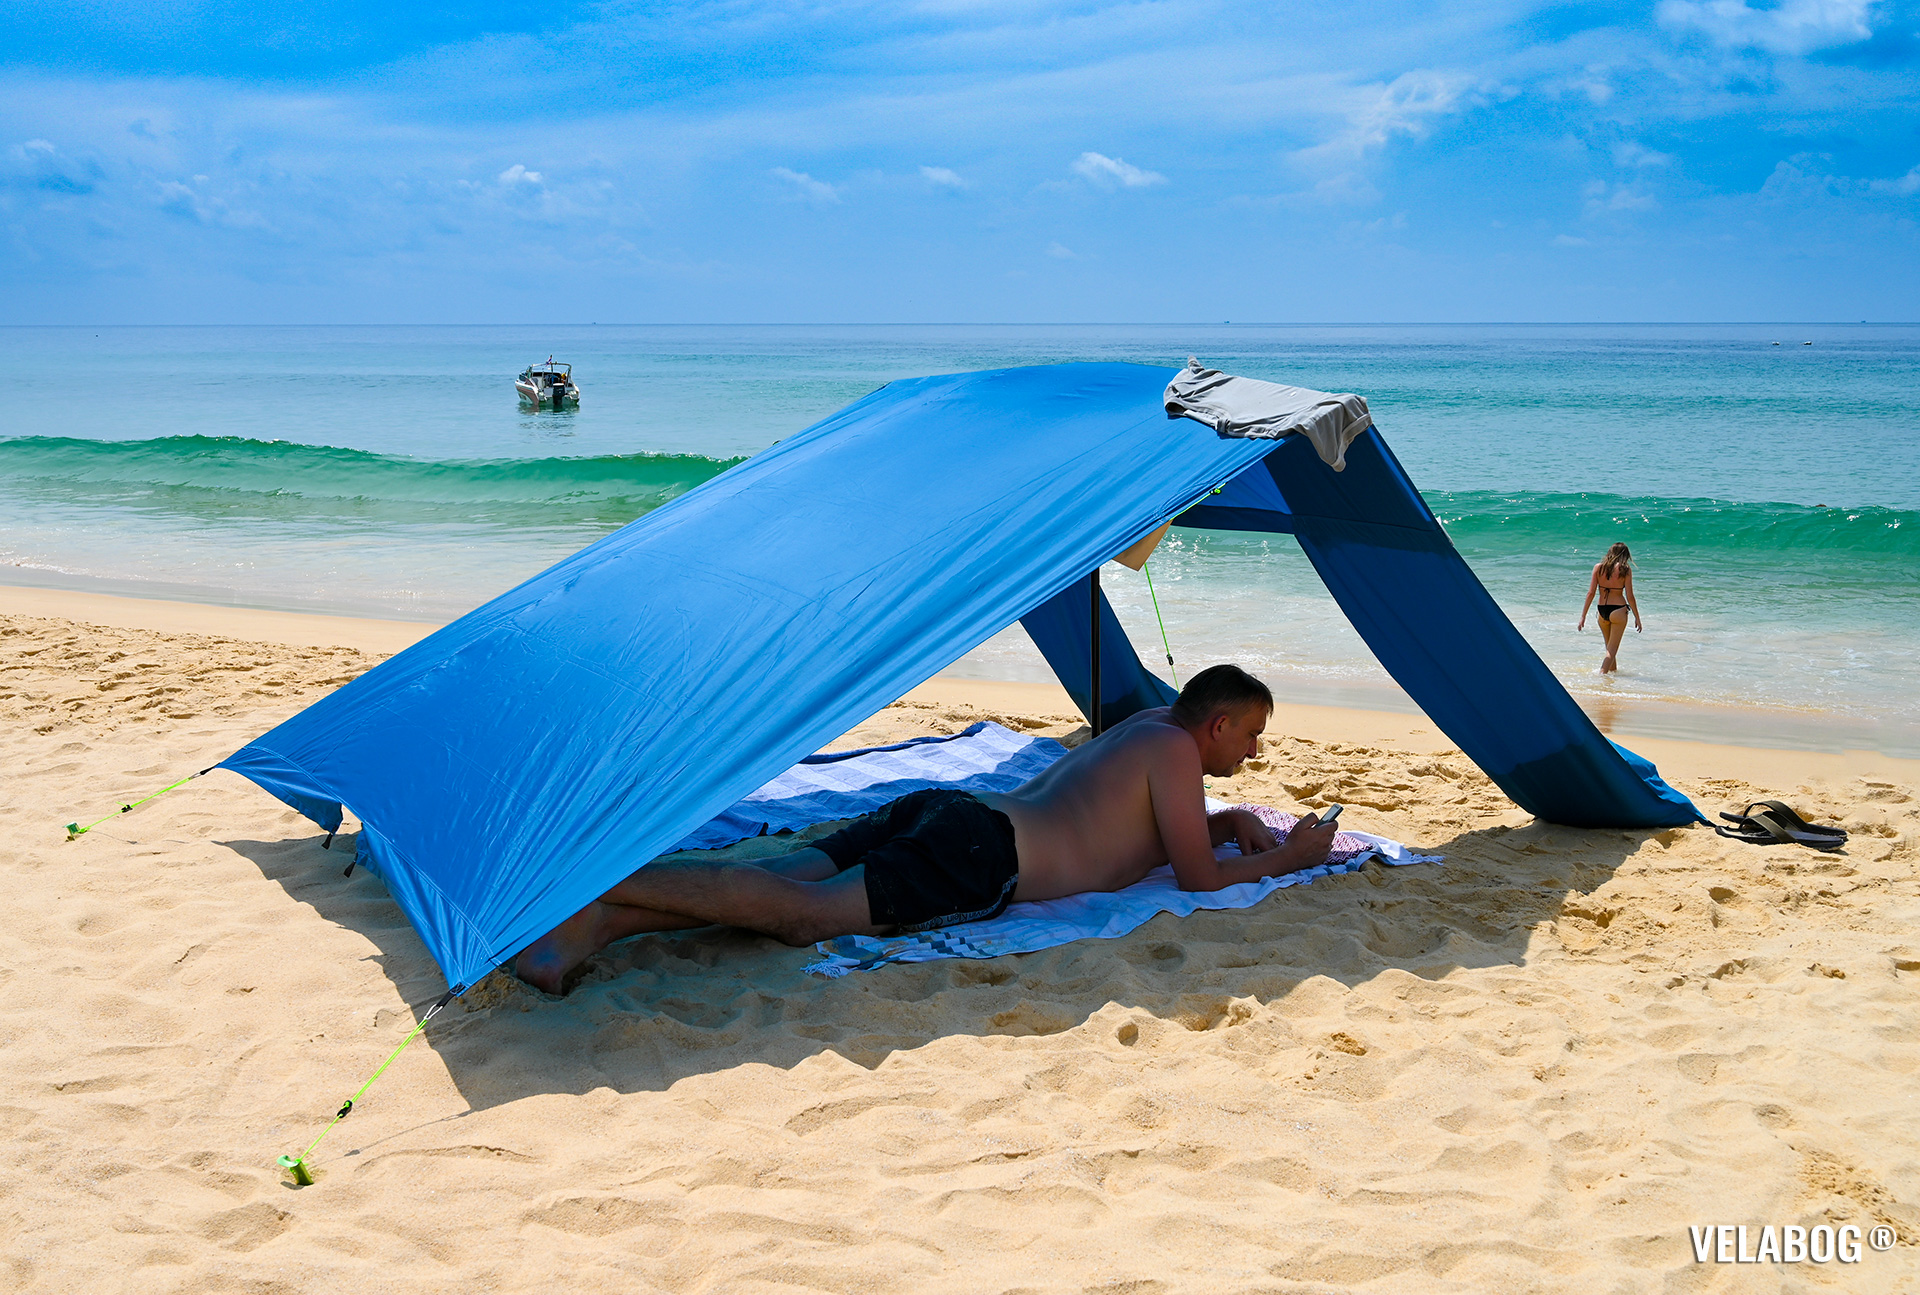 Солнечный парус Velabog «Breeze» голубой. Высокое и не душное укрытие от солнца на пляже. Вариант установки при слабом или порывистом ветре или если ветра нет.